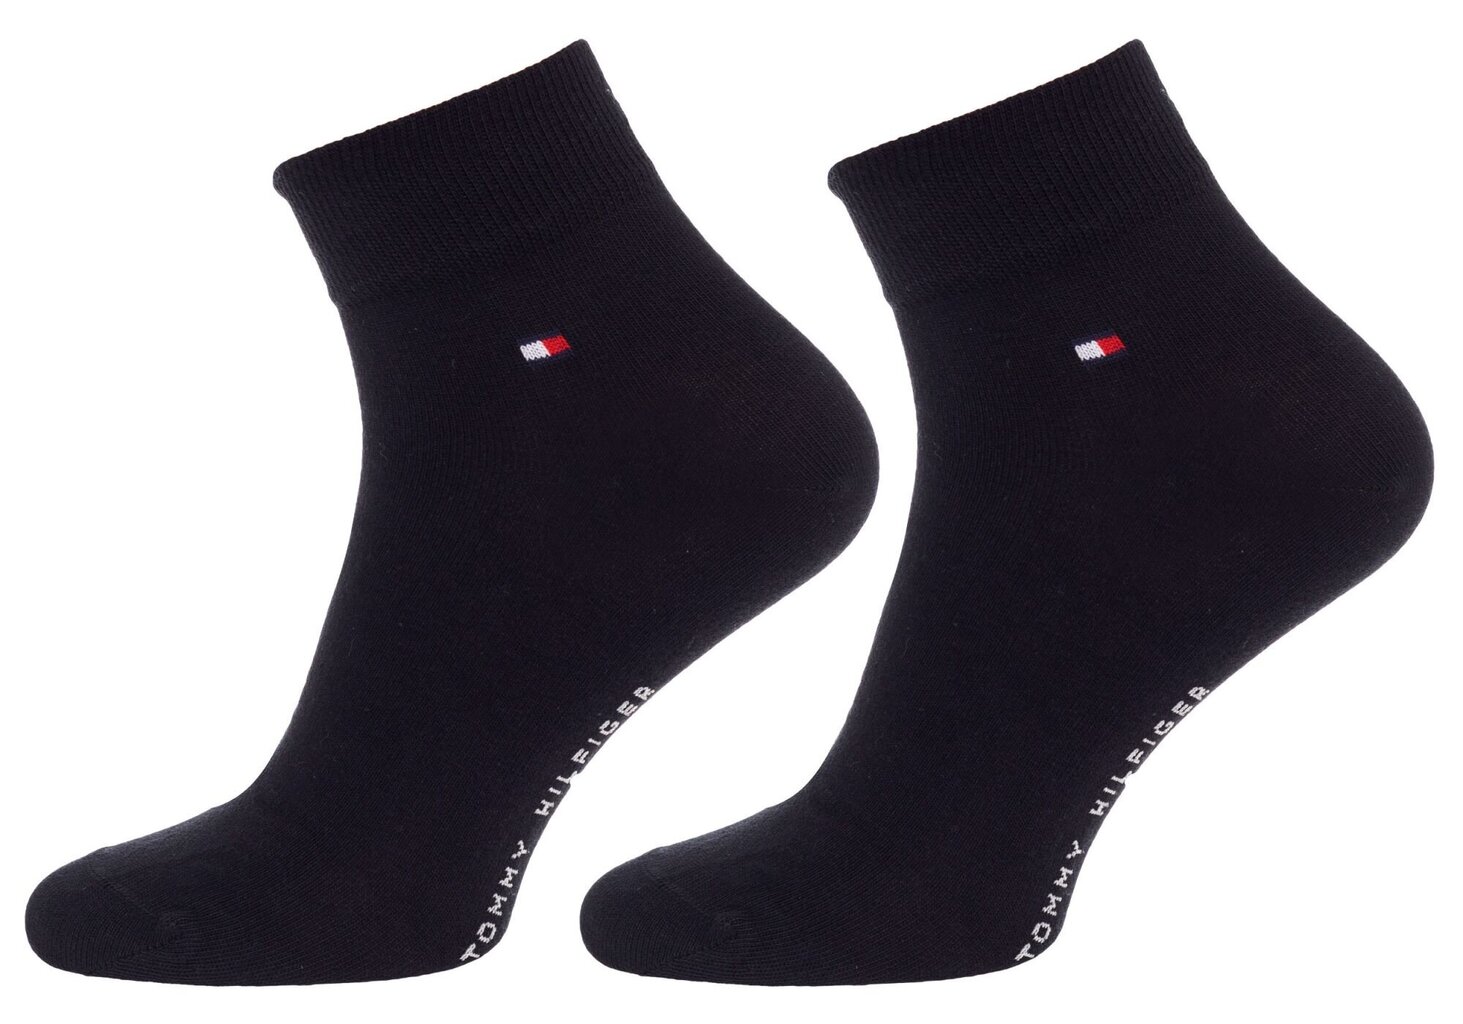 Vyriškos kojinės TOMMY HILFIGER, 6 poros, juodos spalvos, 100002988 001 41594 kaina ir informacija | Vyriškos kojinės | pigu.lt